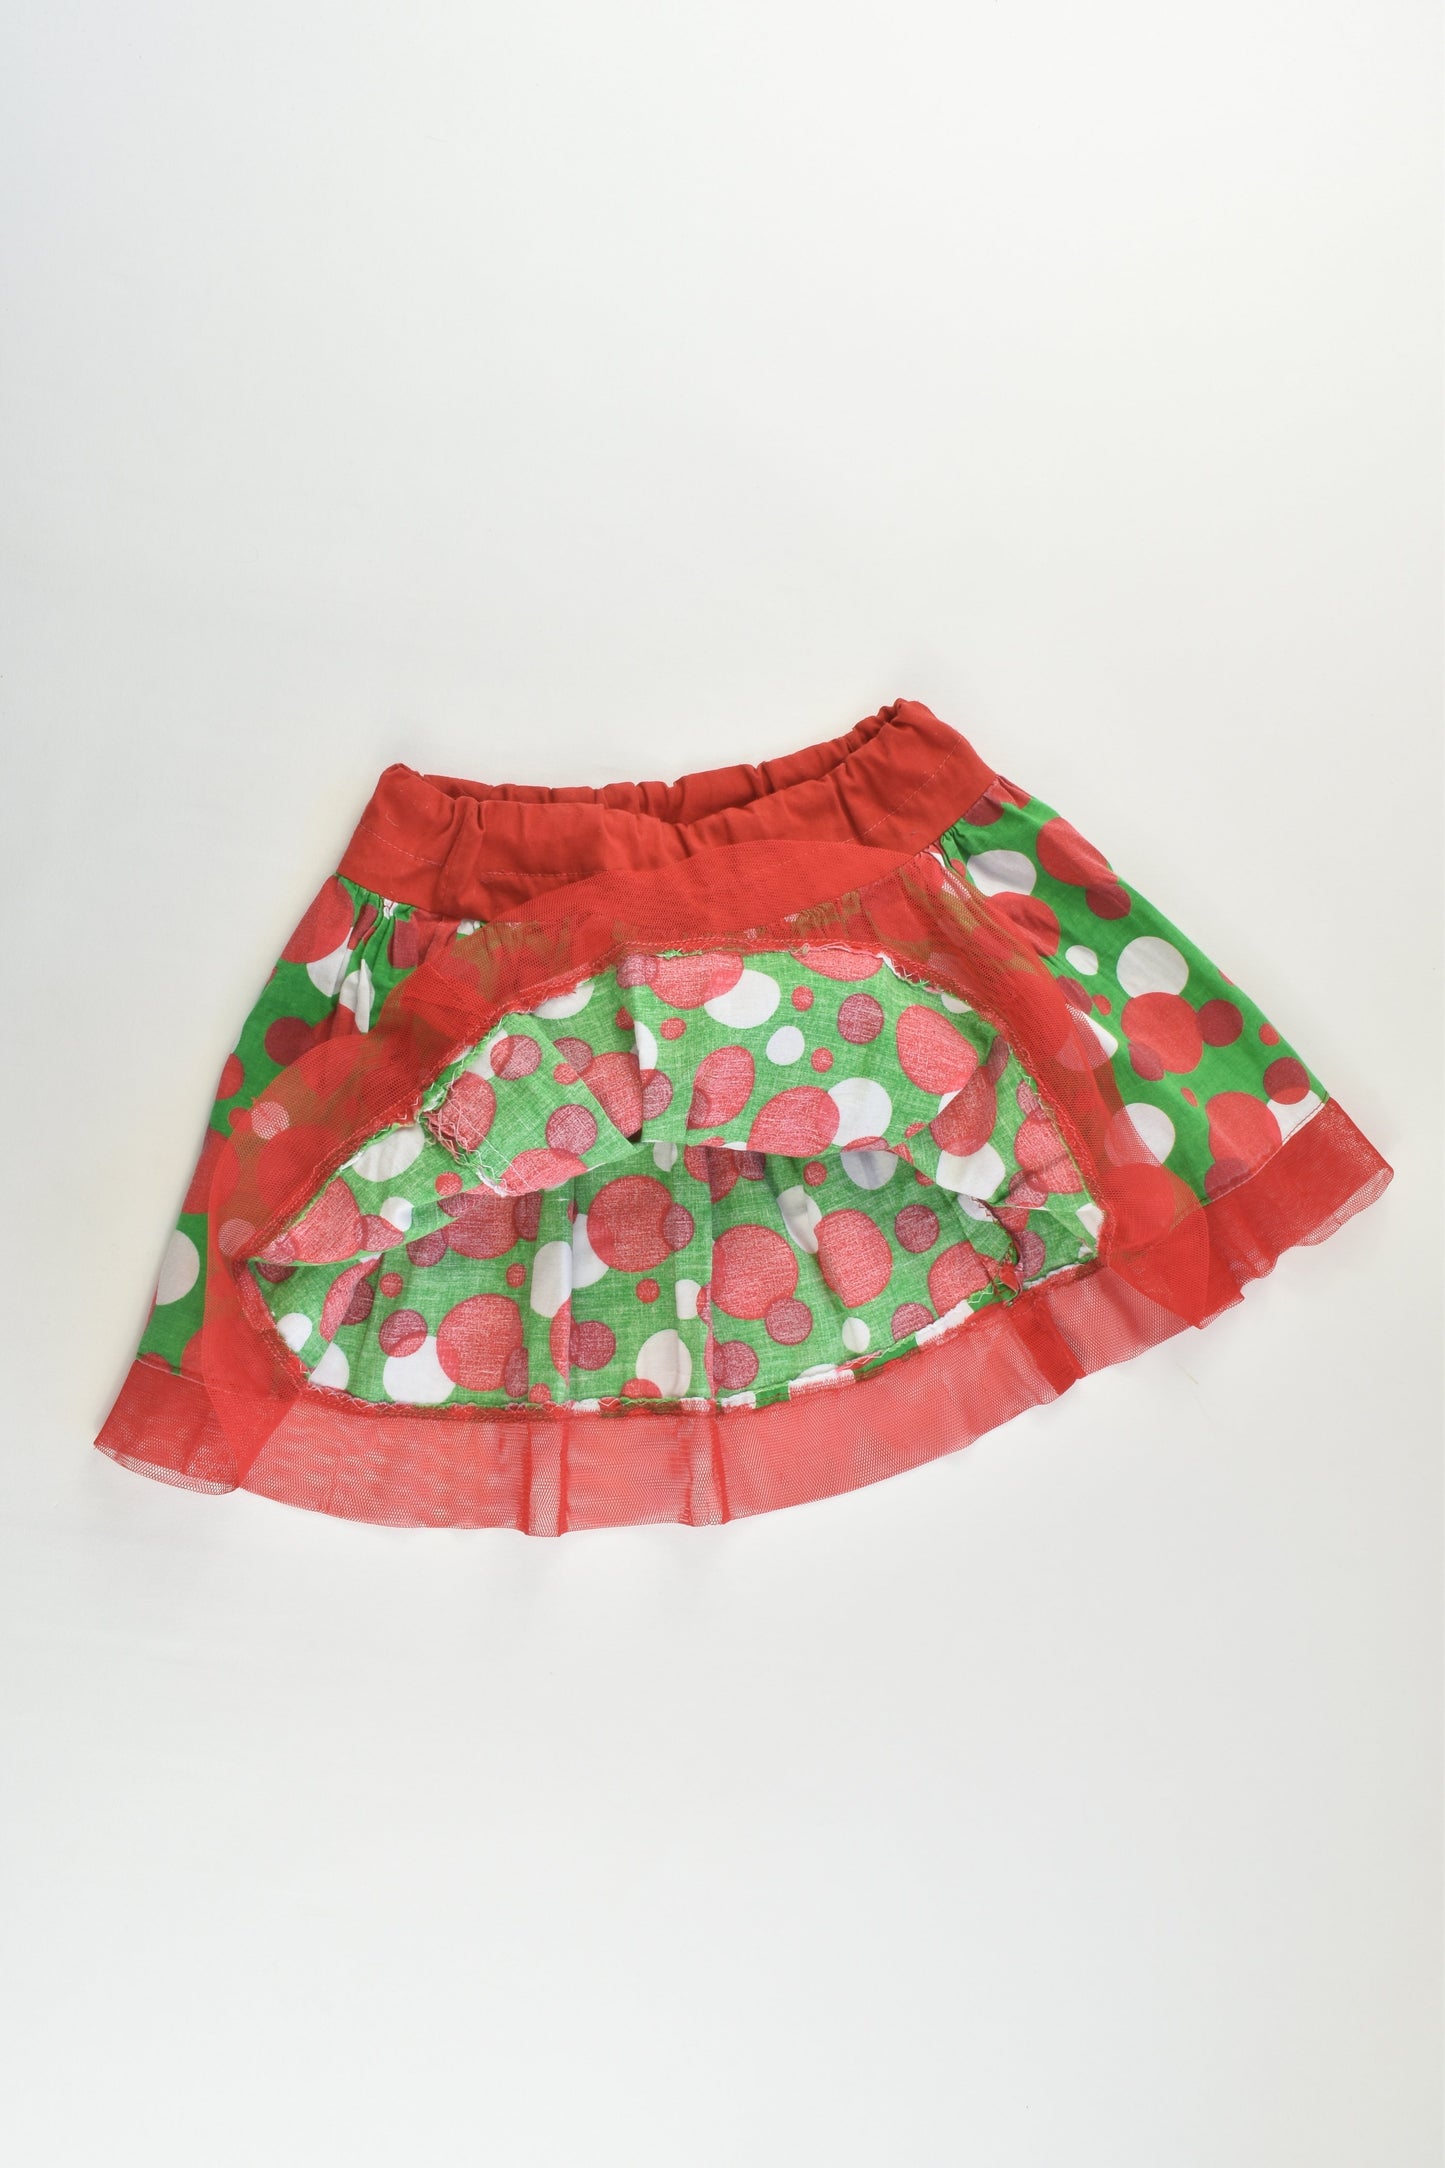 Handmade Size approx 2-3 Skirt